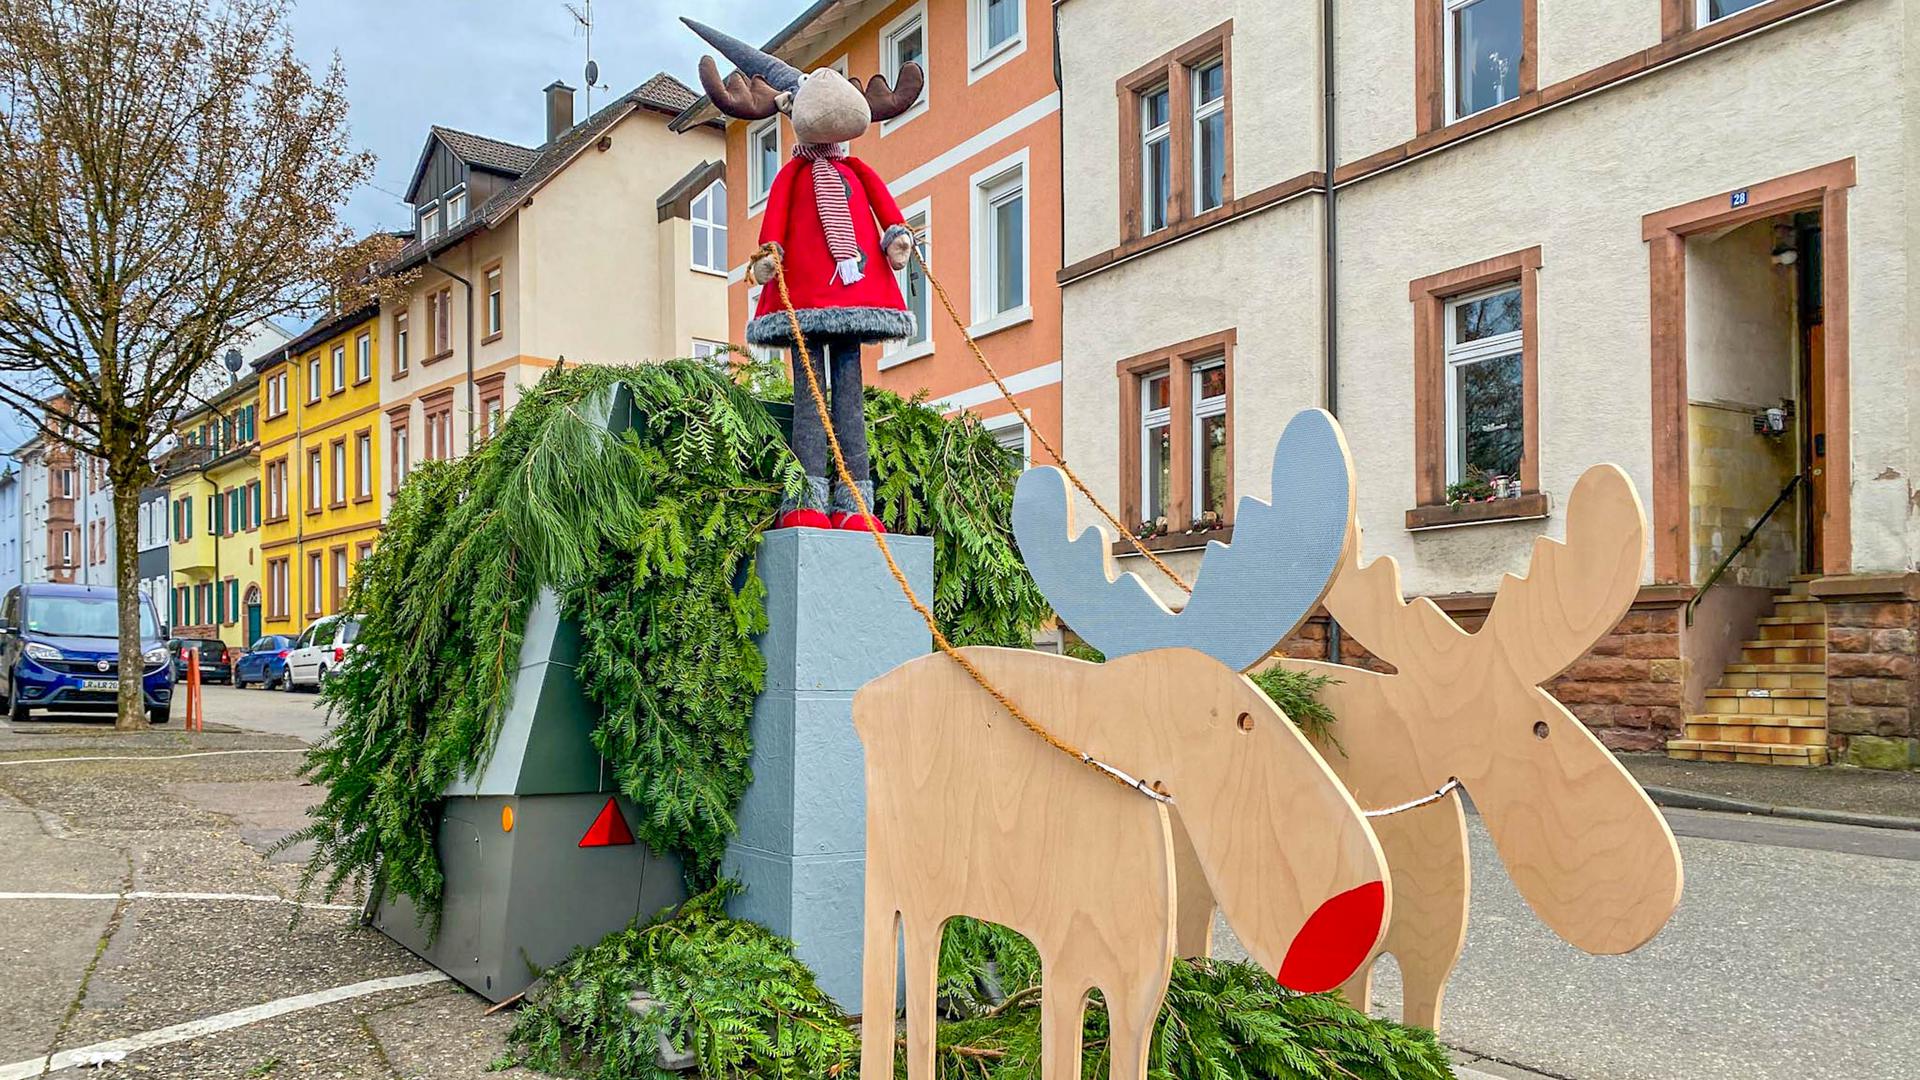 Gute Idee: Die Stadt Lahr dekorierte einen sogenannten Enforcement-Trailer weihnachtlich mit Rentieren, Weihnachtsmann und Grün. 